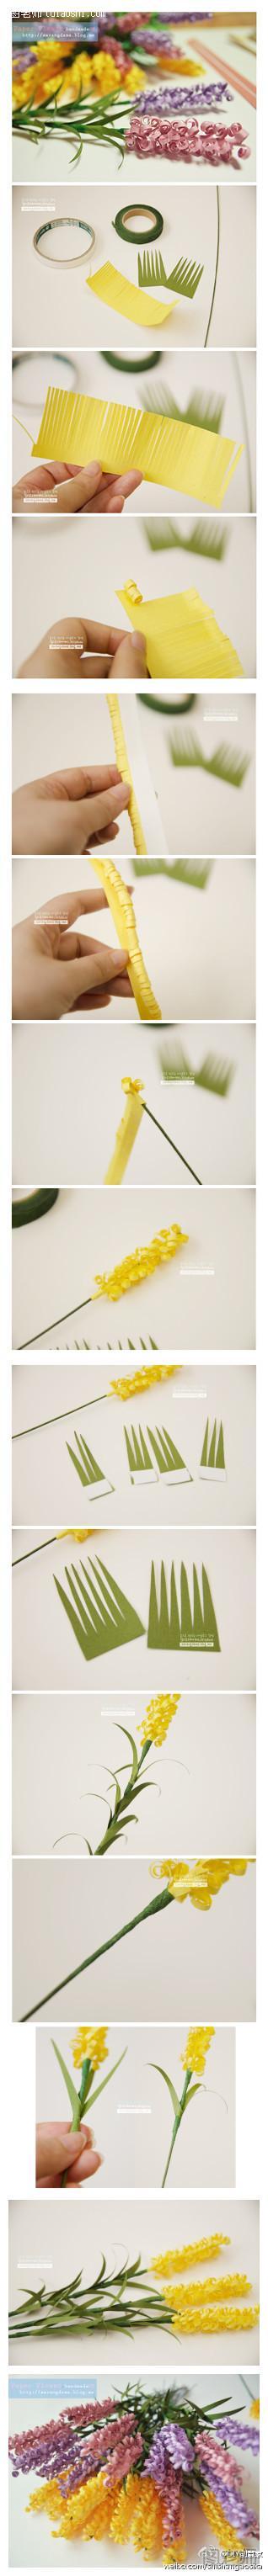 手工制作漂亮的丁香花教程图片